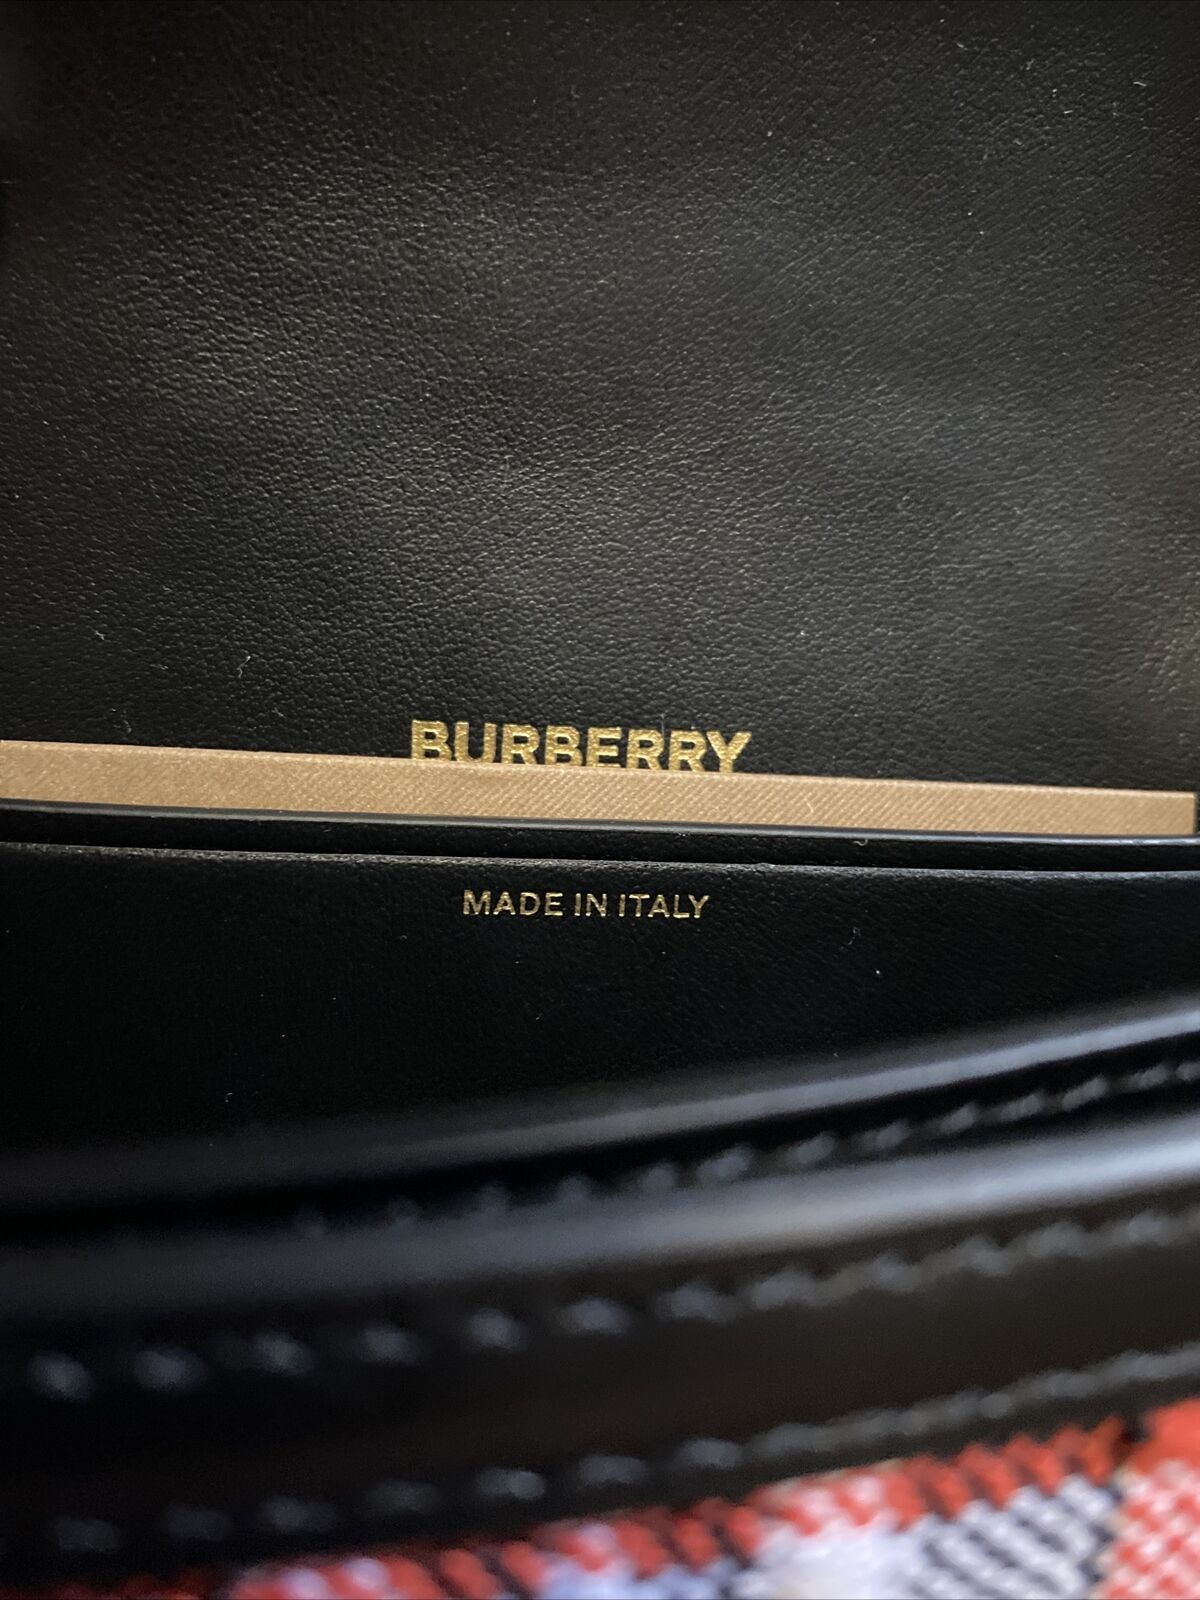 Новая вязаная седельная сумка Burberry Olympia Tartan, красный/мульти, Италия